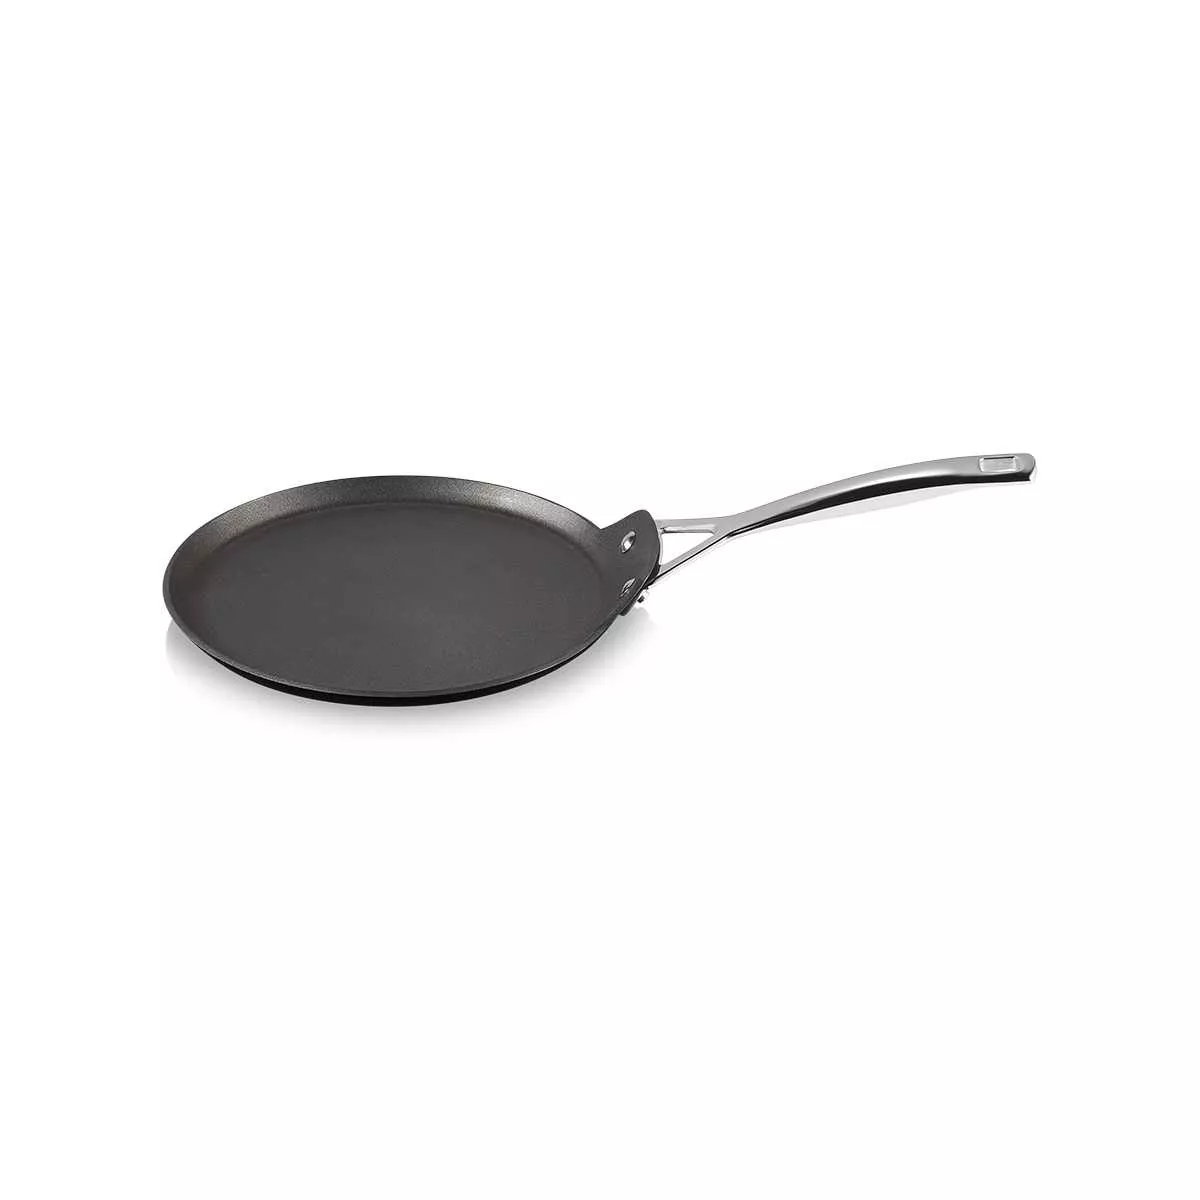 Сковорода блинная антипригарная Le Creuset Tns&Cast Alu Black, диаметр 28 см (51106280010002) - Фото nav 1